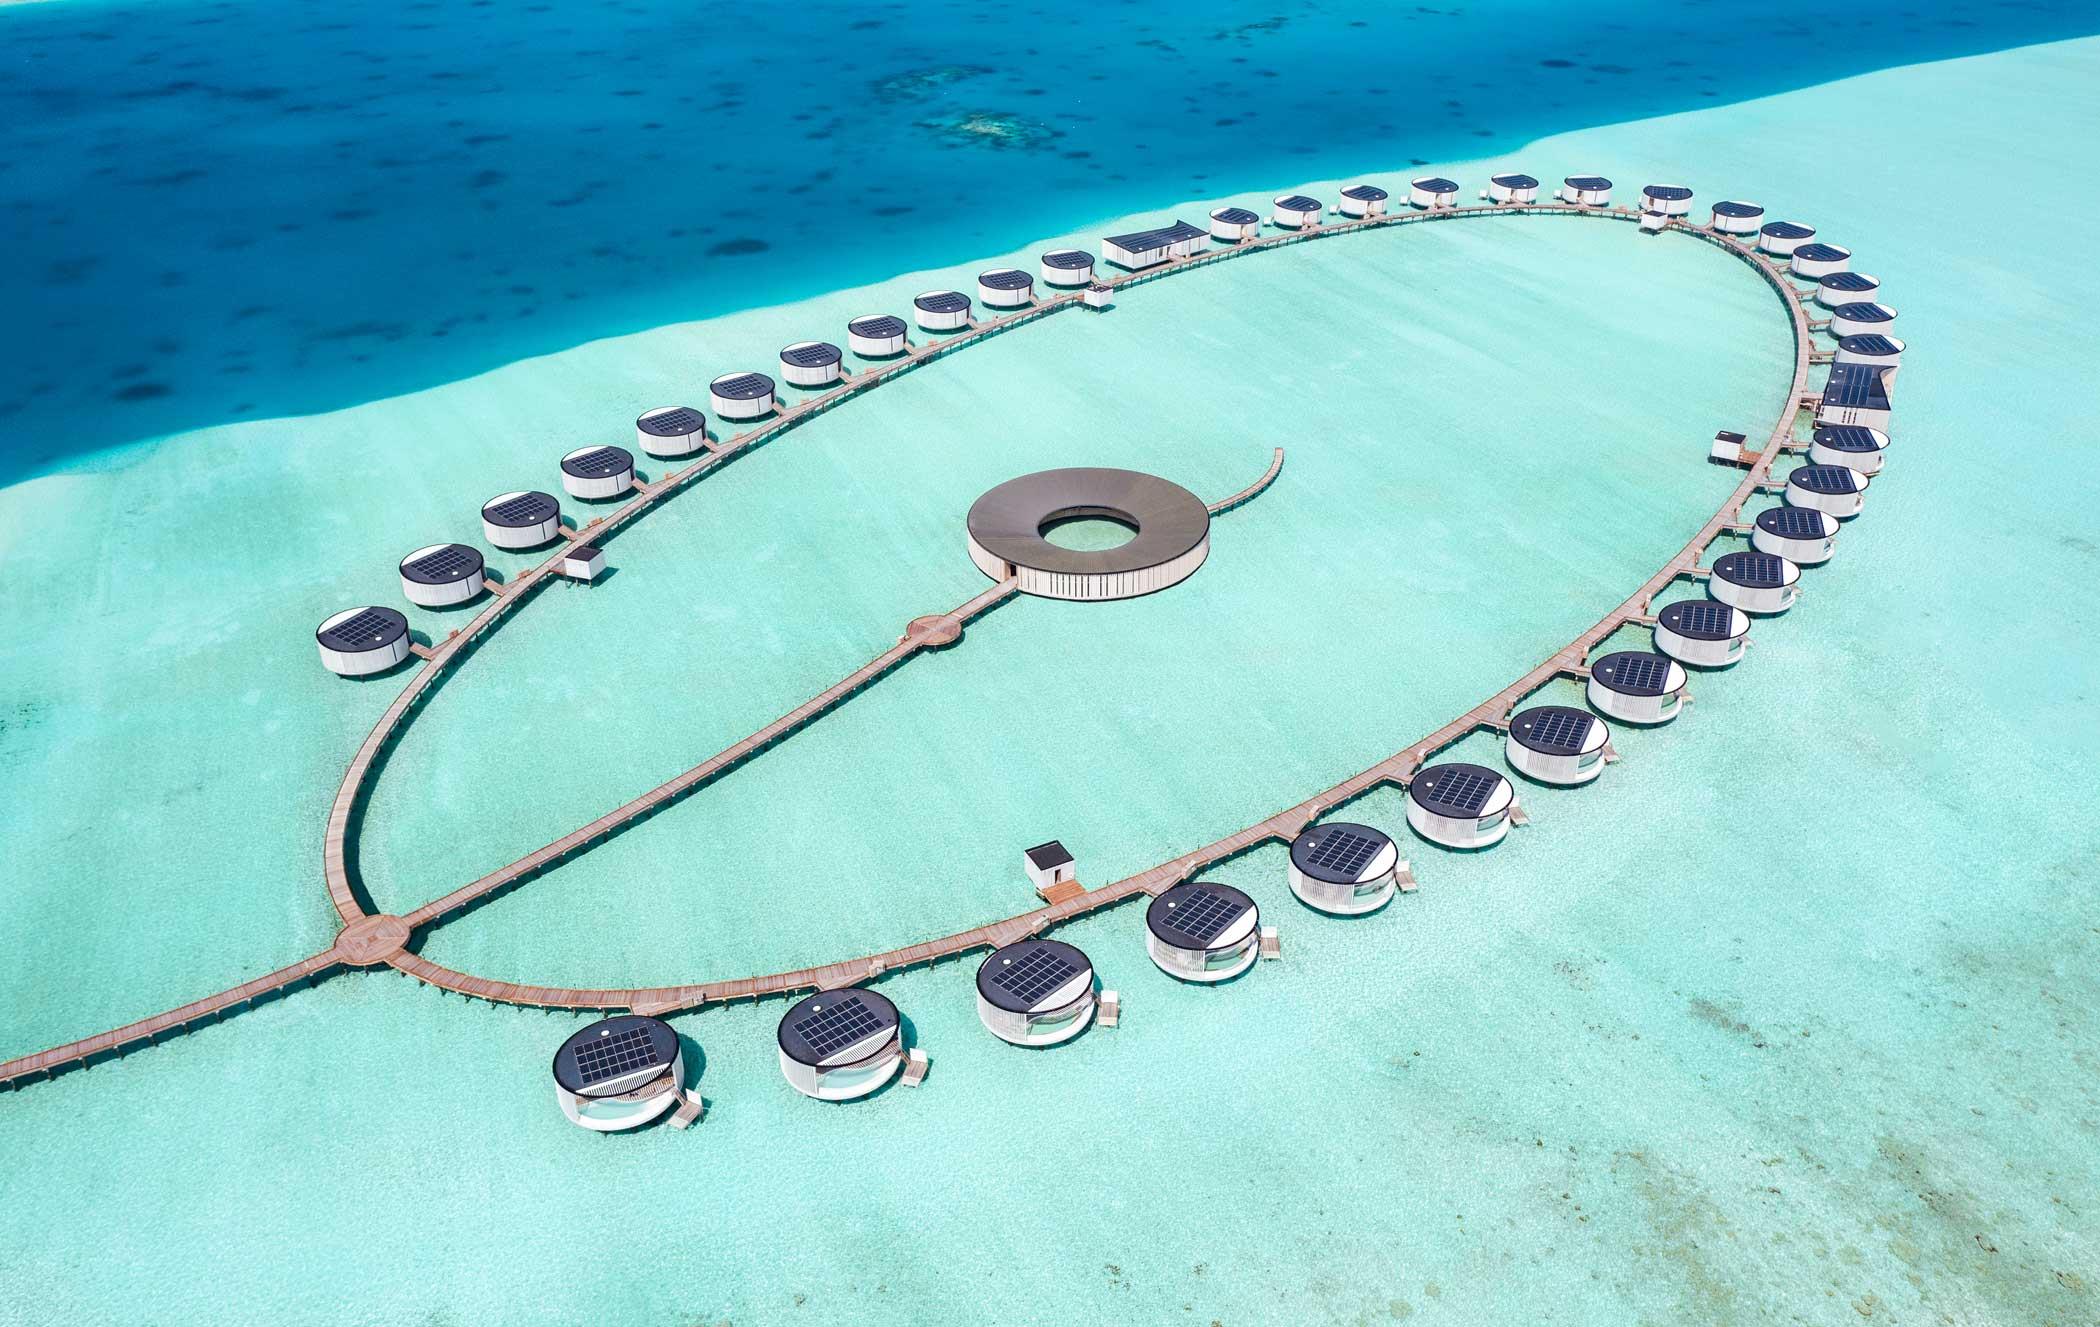 The Ritz-Carlton Maldives, Fari Islands 5*